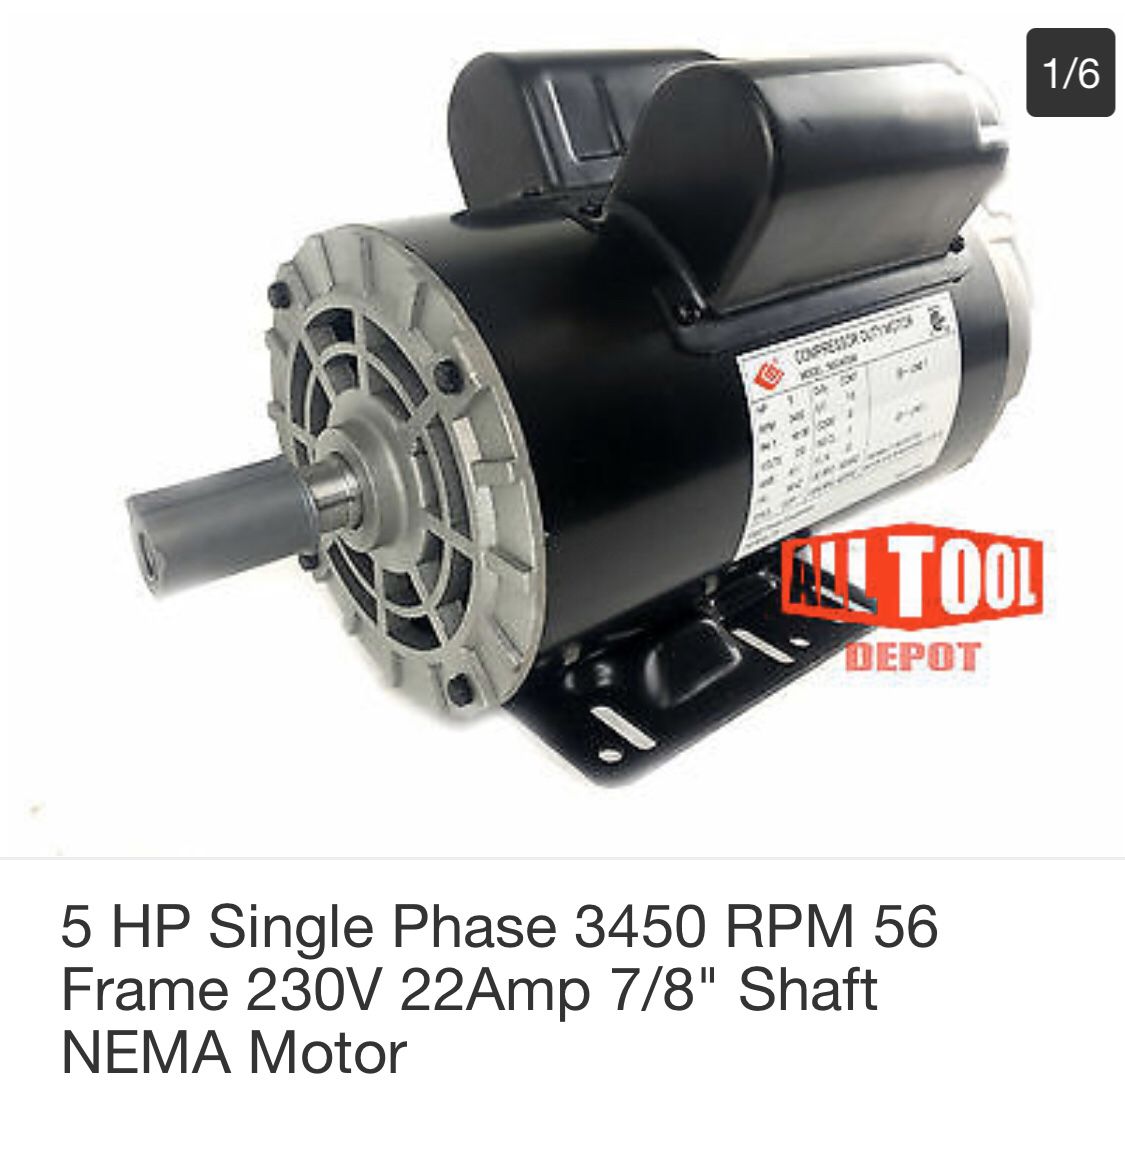 5 HP Single Phase 3450 RPM Frame 230v 22Amp 7/8”Shaft NEMA Motor - brand new in the box